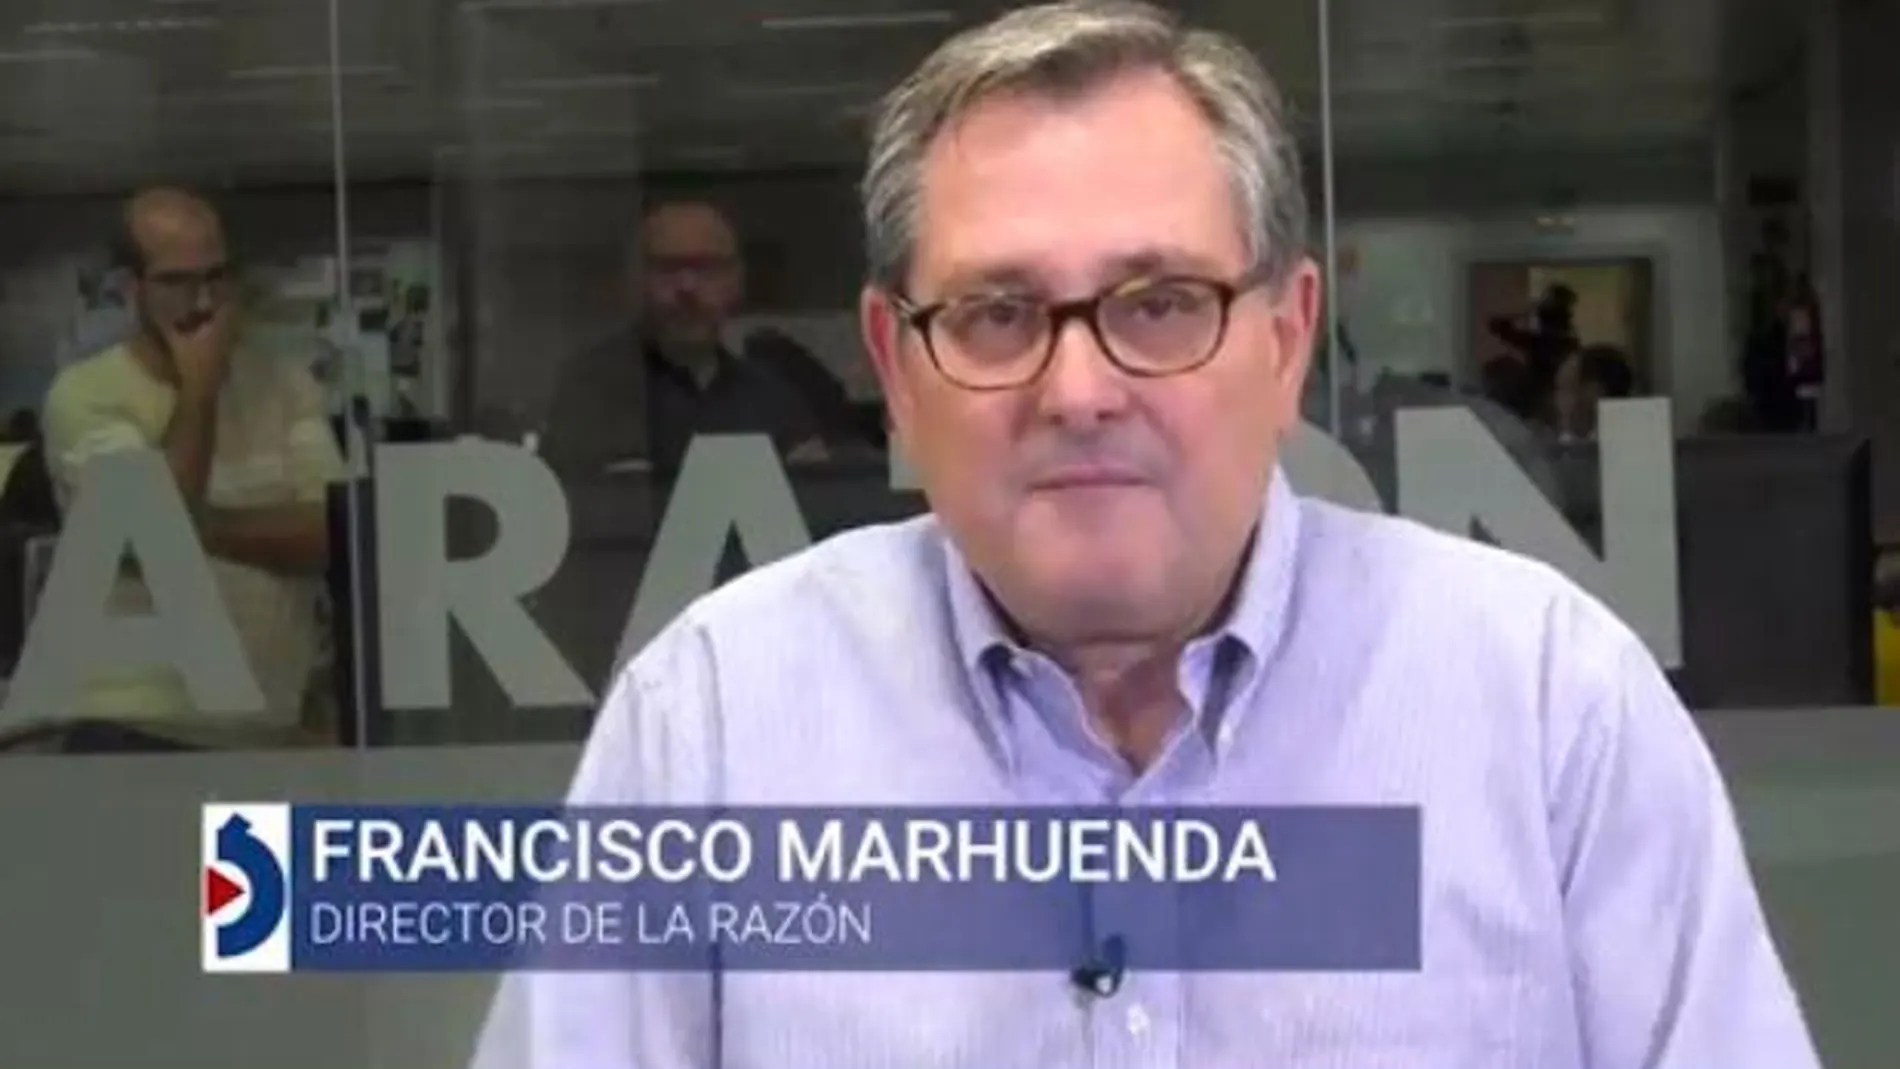 La opinión de Francisco Marhuenda: “El independentismo catalán solo entiende la firmeza del Estado”